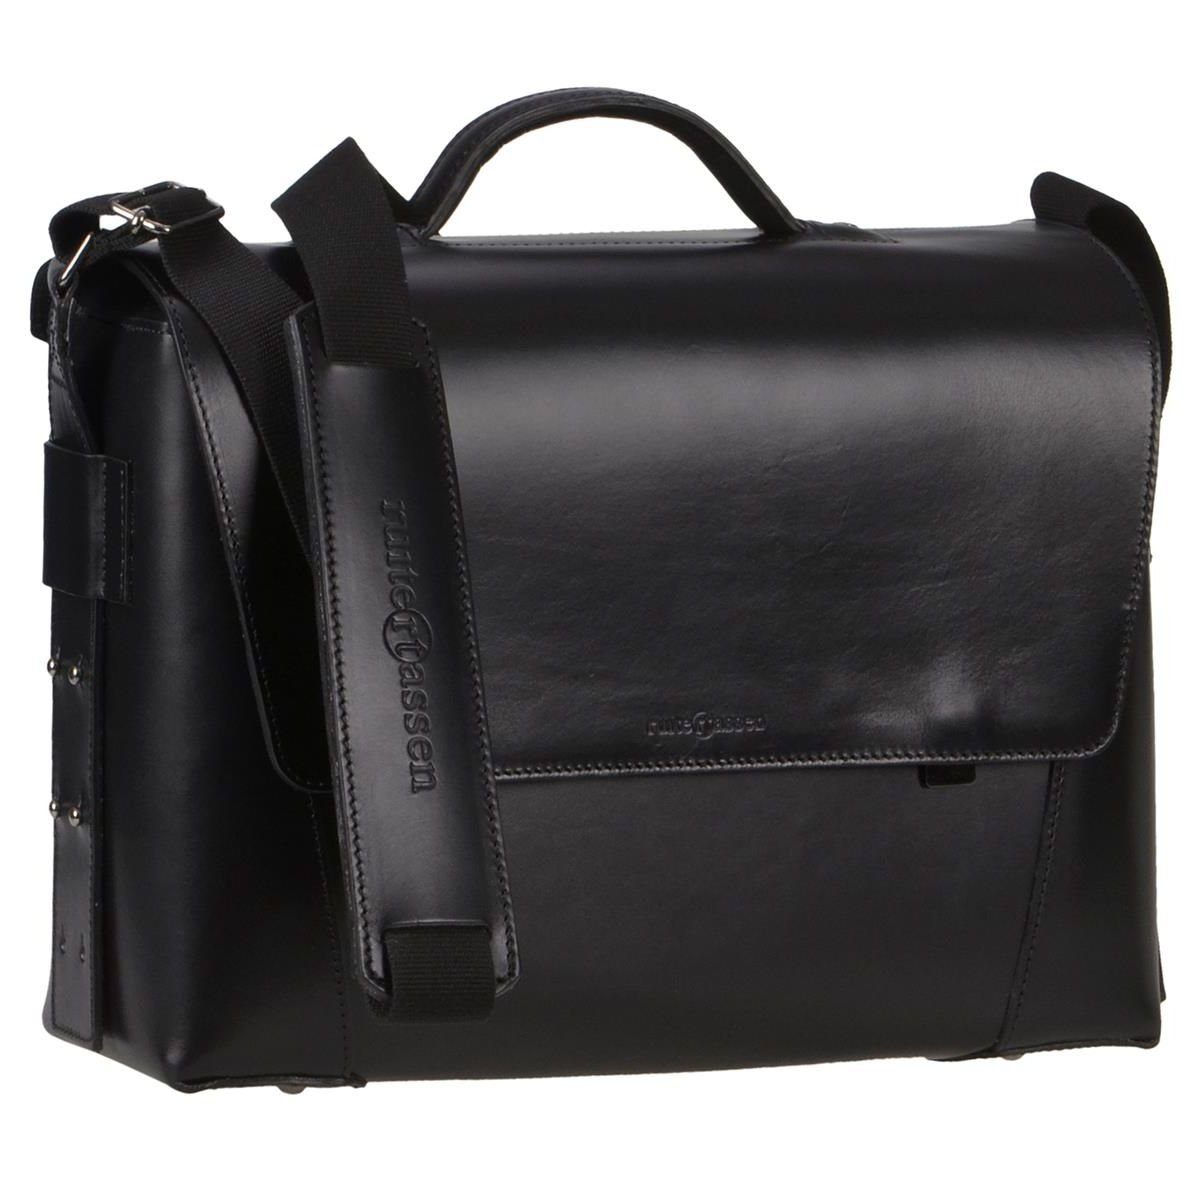 Ruitertassen Aktentasche Vanguard, 40 cm Lehrertasche mit 3 Fächern, dickes rustikales Leder in schwarz